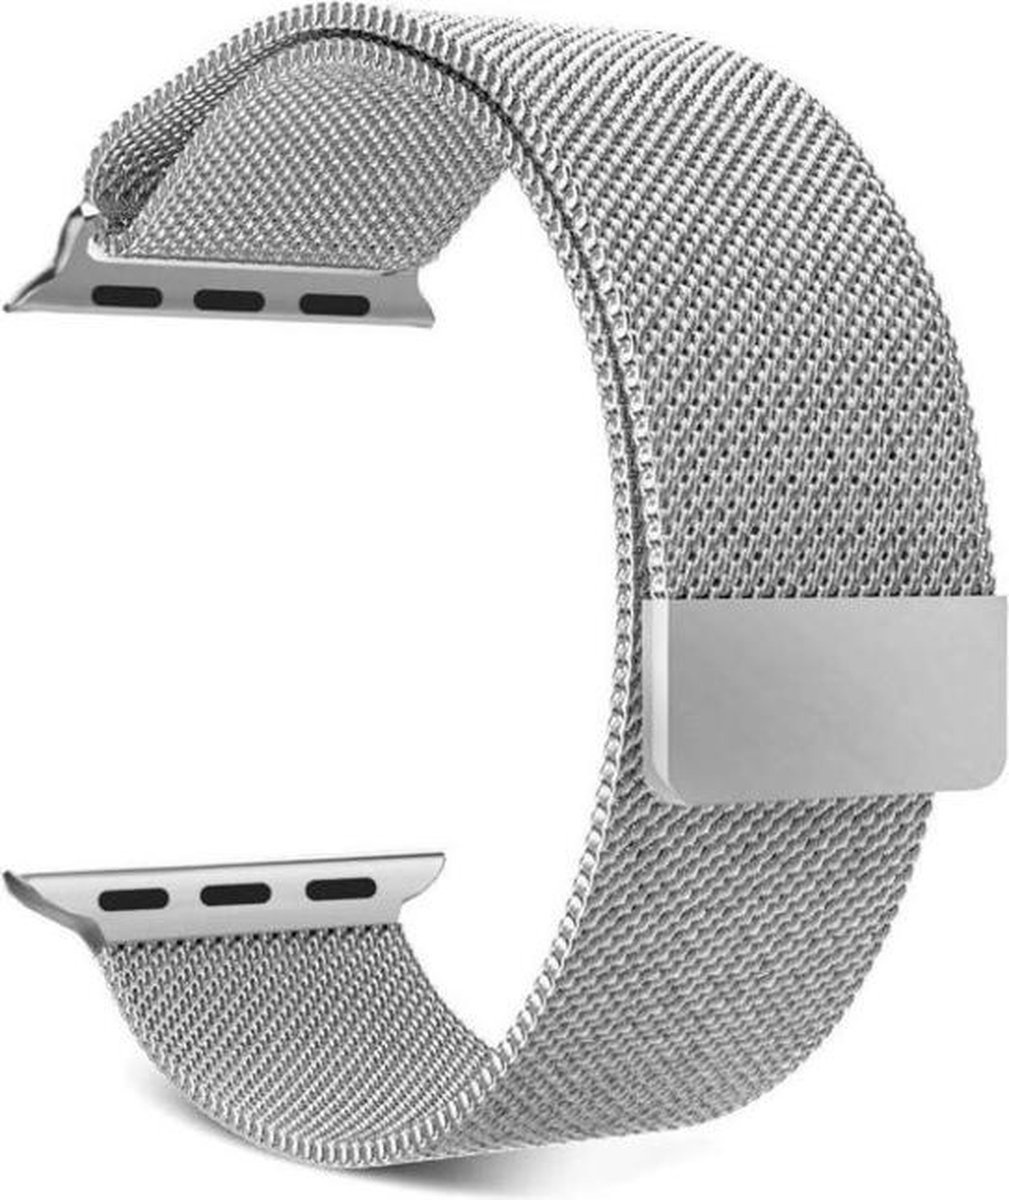 NoXx Horlogeband Milanees Geschikt voor Apple Watch 8 45 mm Bandje - Bandje Geschikt voor Apple Watch 8 45 mm Band Milanees - Zilver